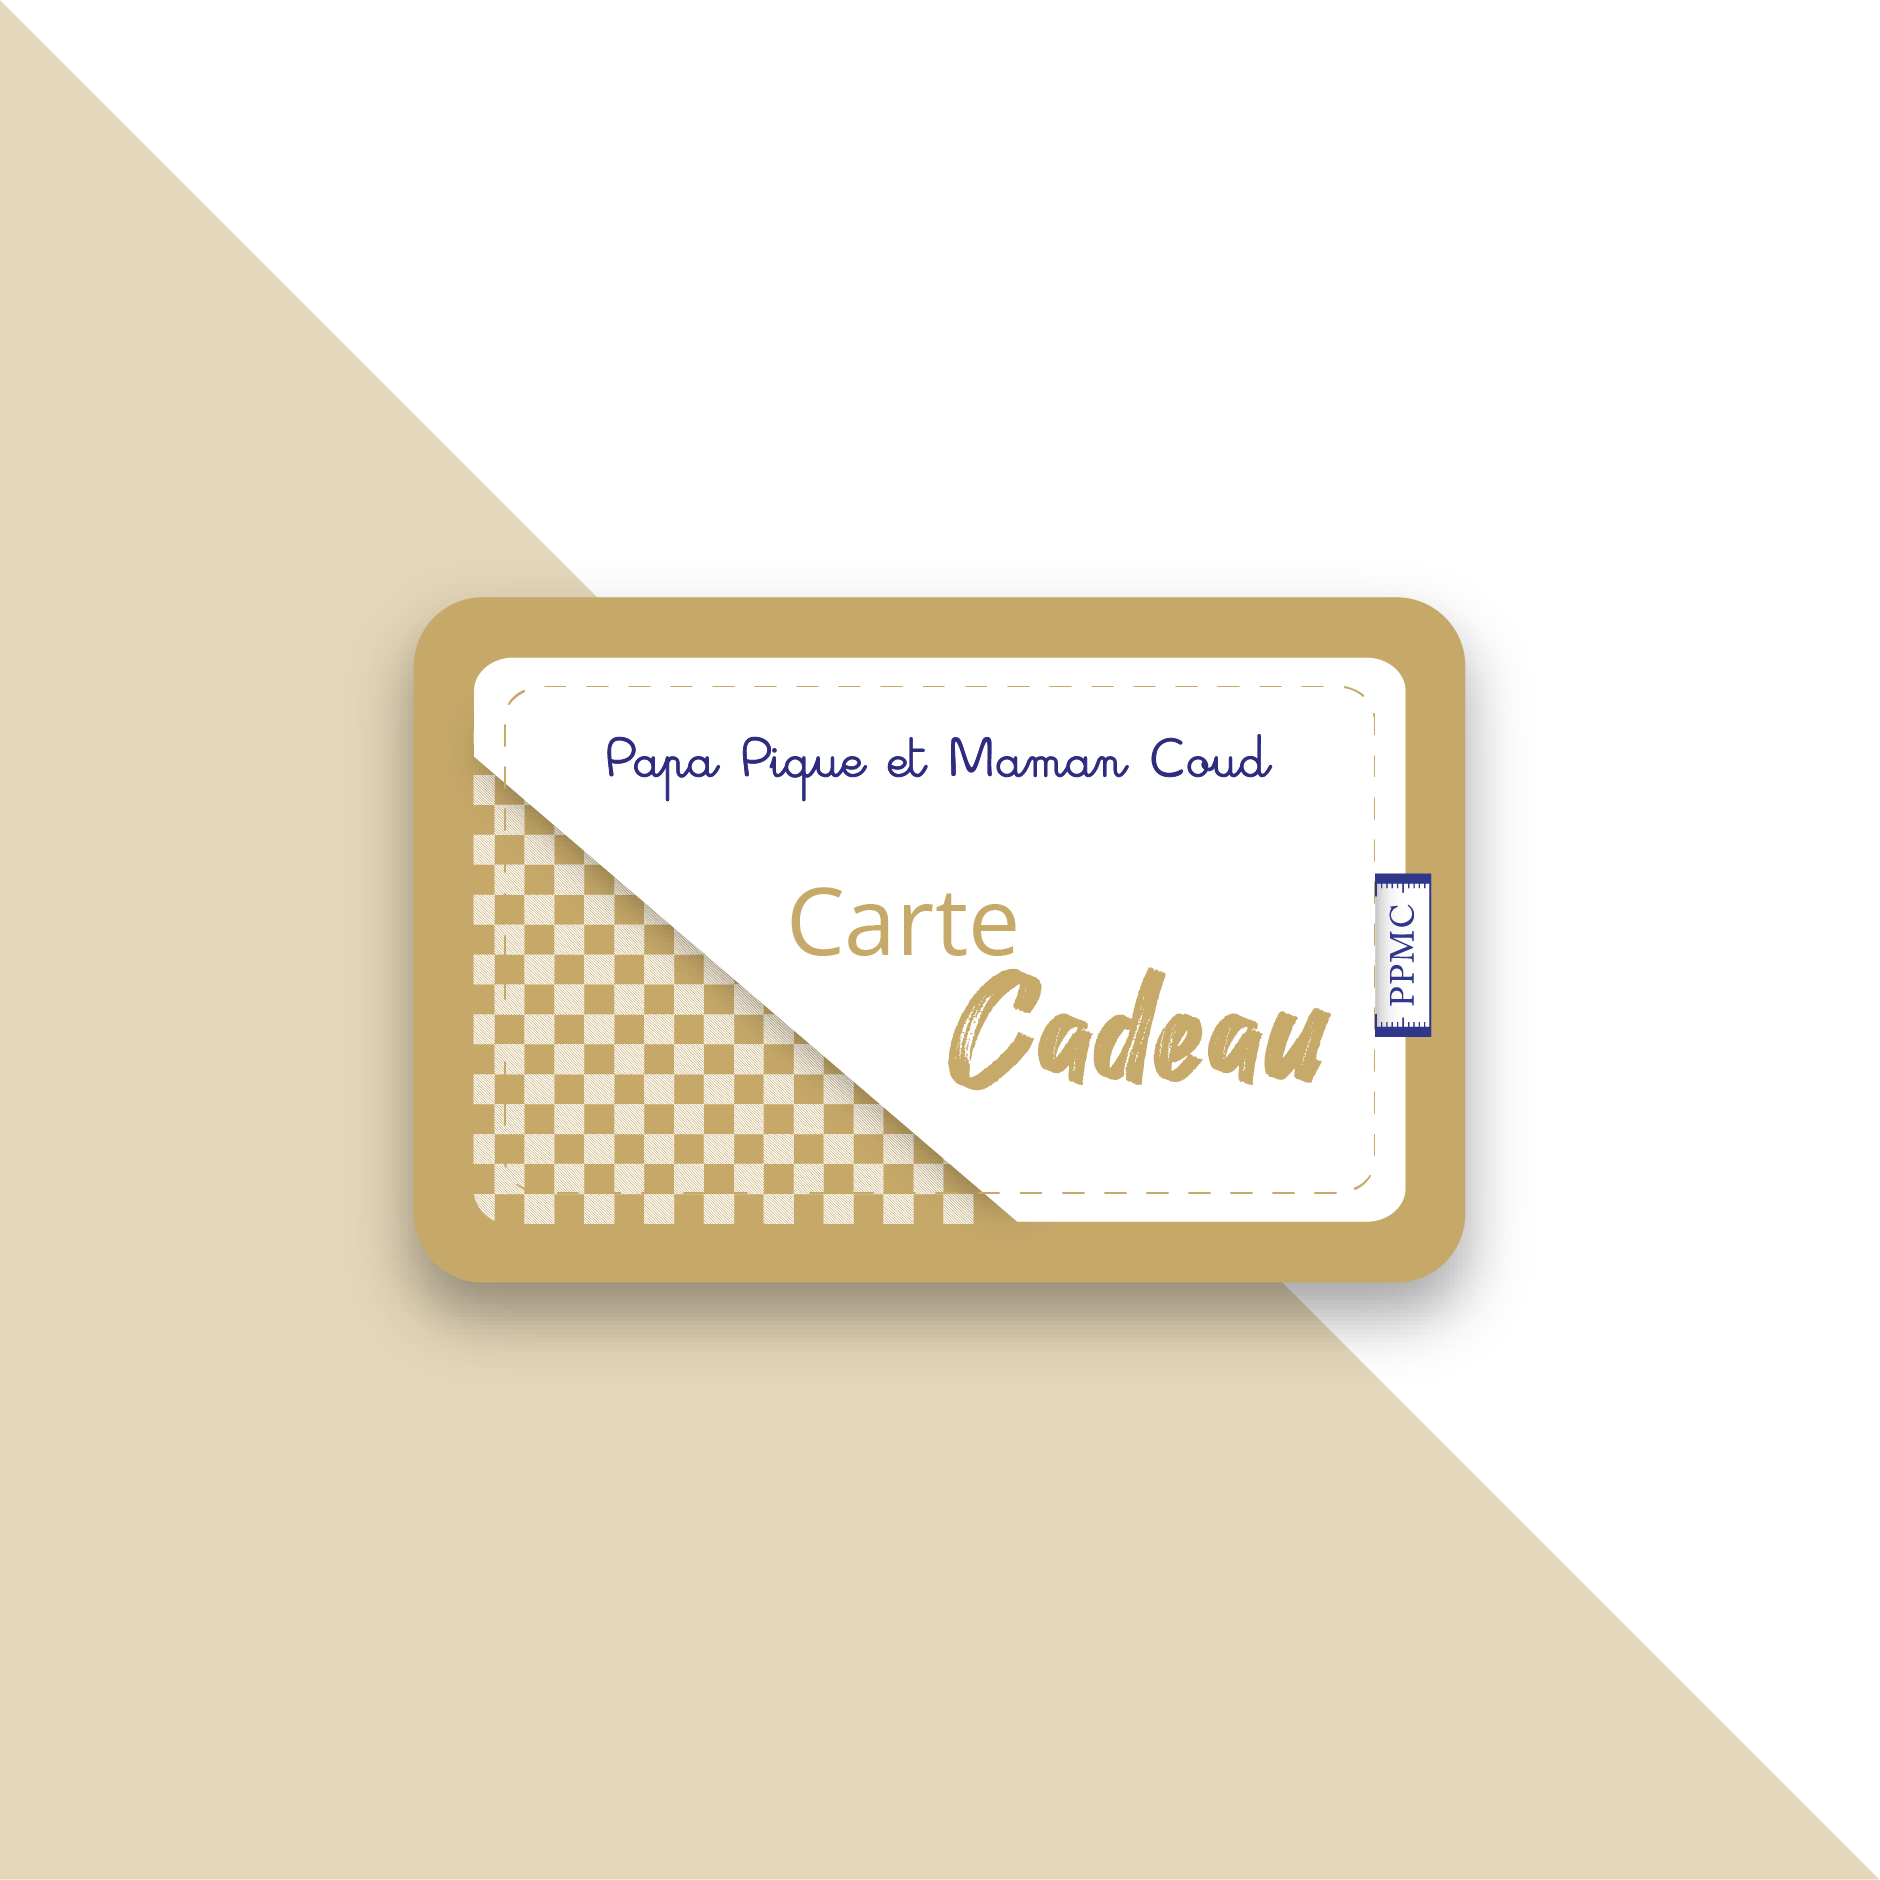  Carte cadeau  - Imprimer - Logo  - Bleu marine:  Gift Cards